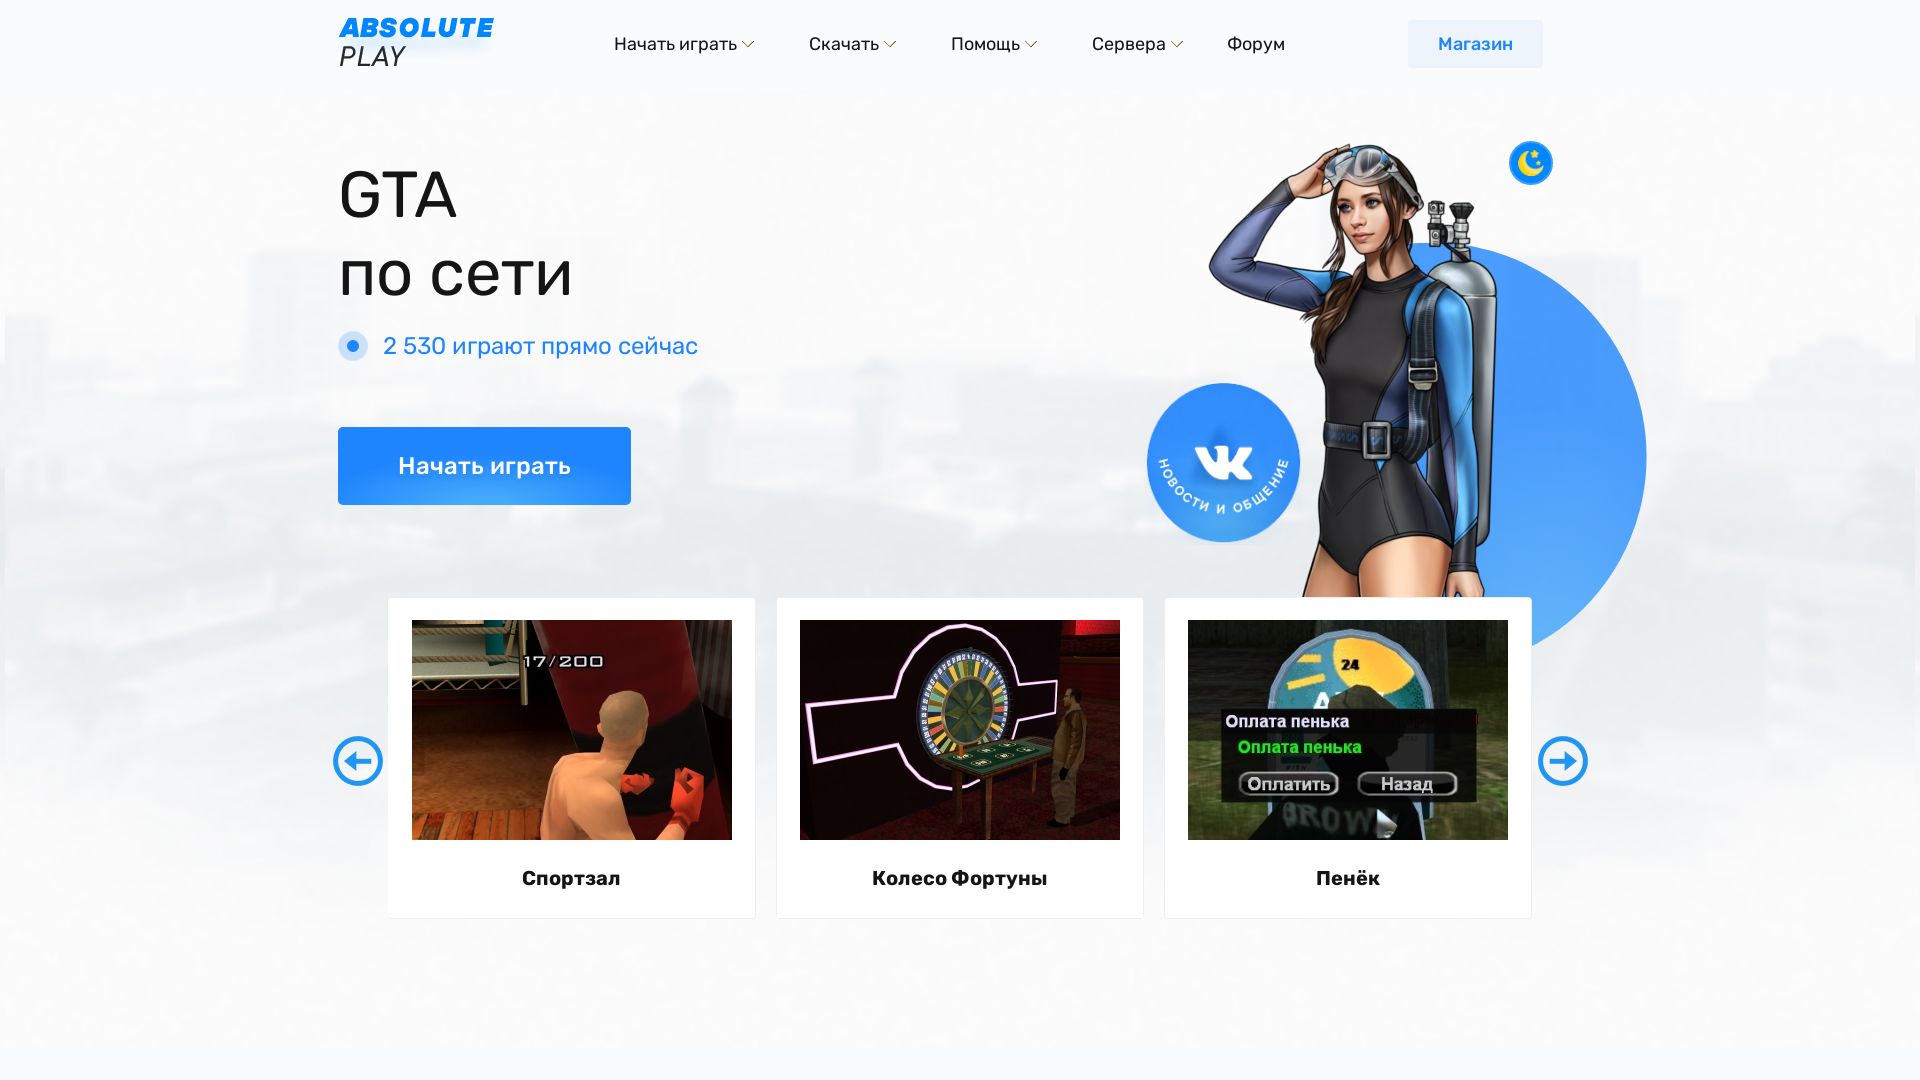 Website status gtsa.ru is   ONLINE